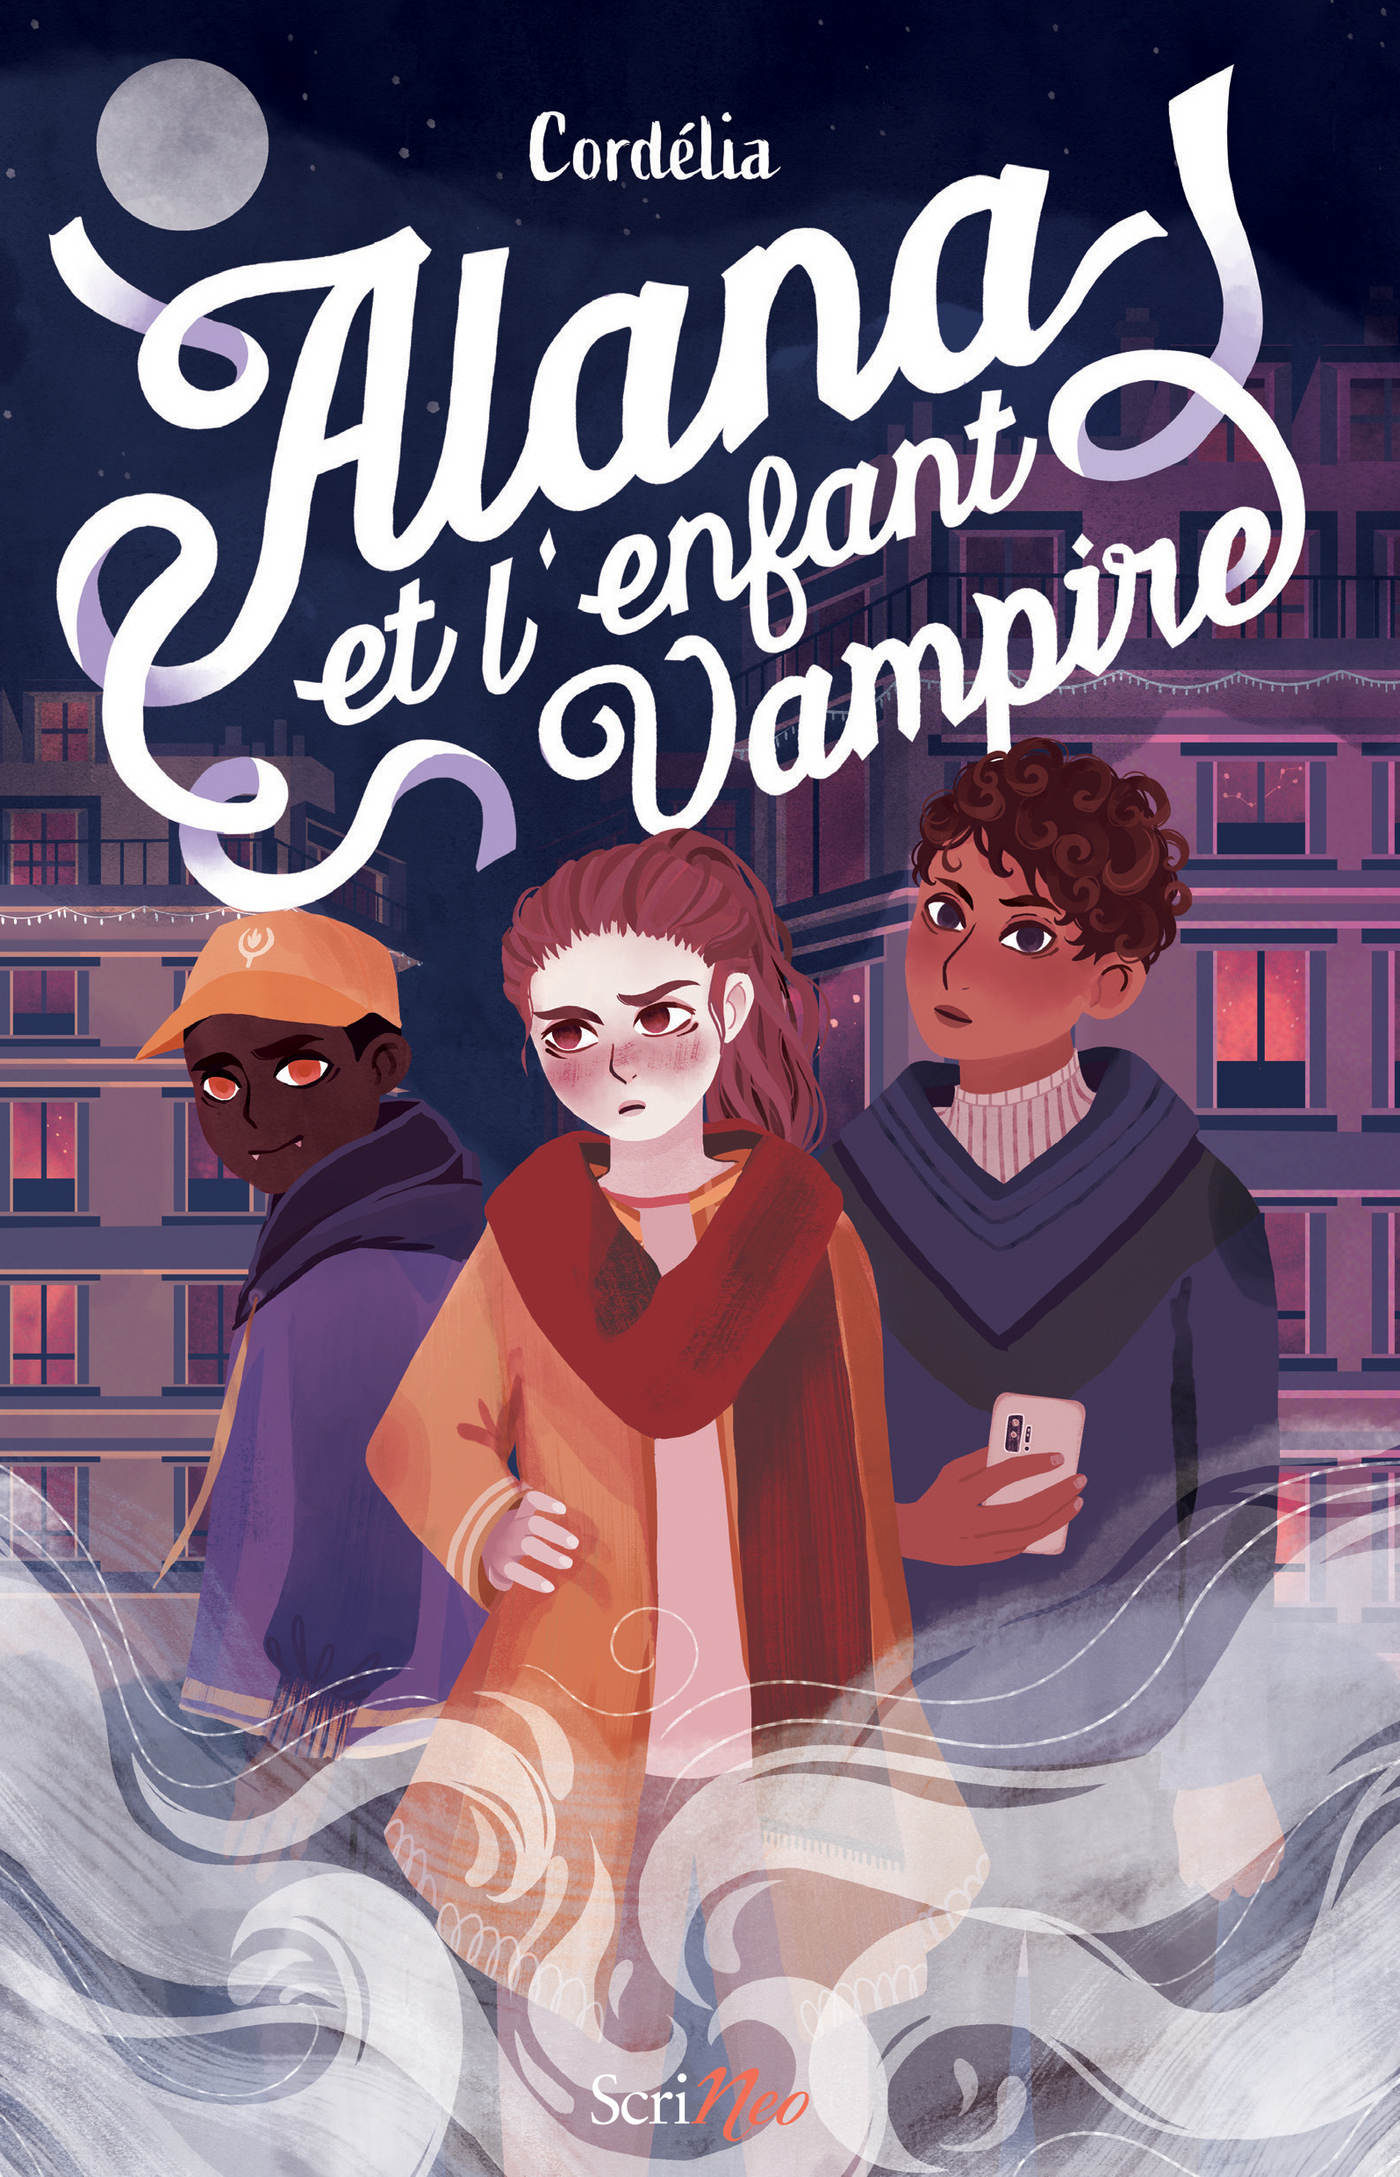 Afficher "Alana et l'enfant vampire"